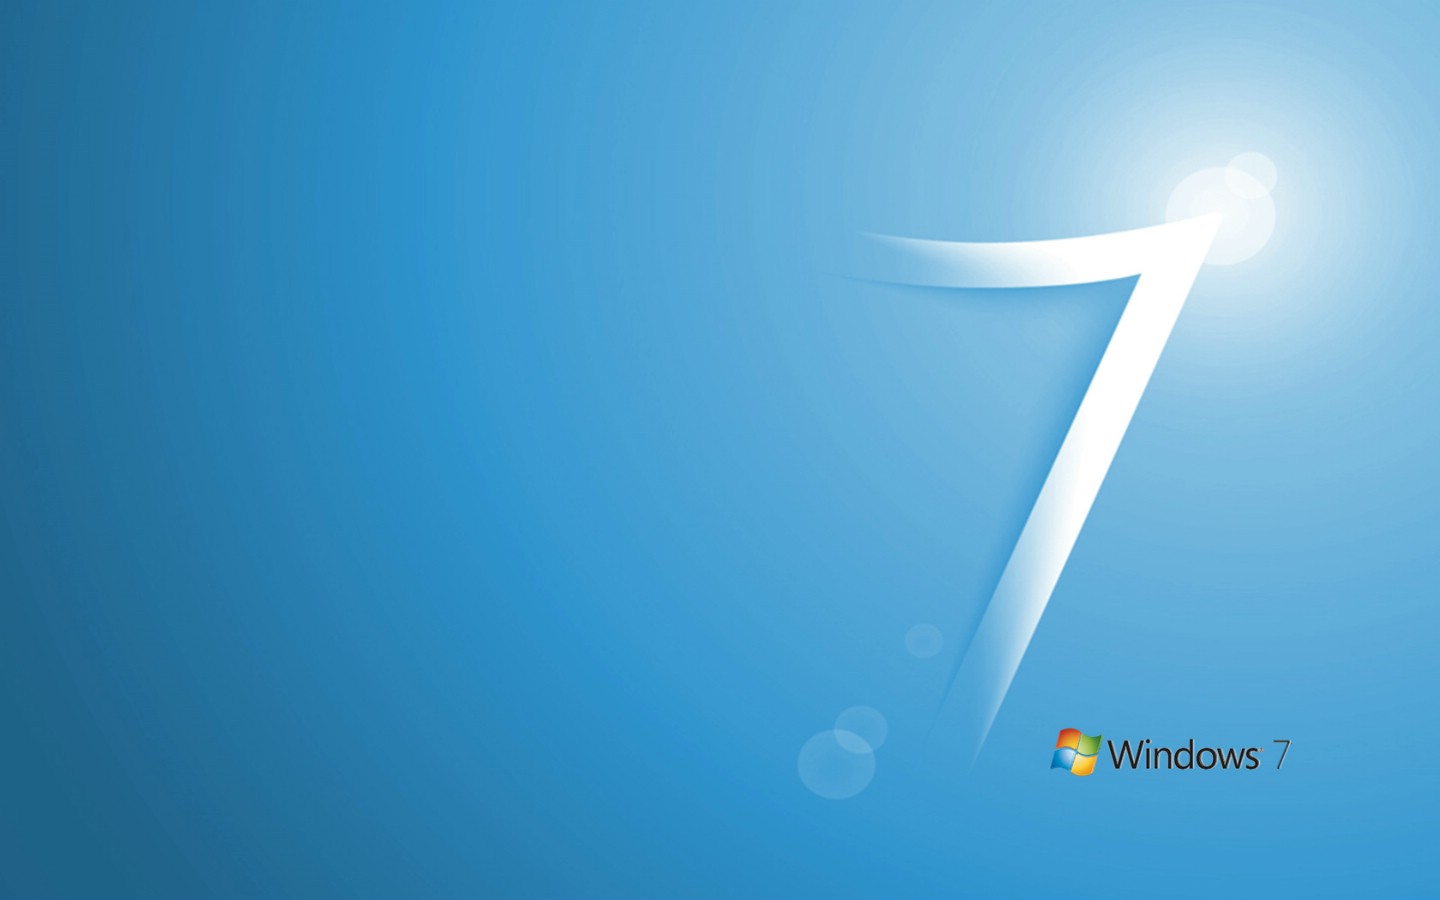 壁纸1440x900Windows 7新Logo壁纸壁纸 Windows 7新Logo壁纸壁纸 Windows 7新Logo壁纸图片 Windows 7新Logo壁纸素材 其他壁纸 其他图库 其他图片素材桌面壁纸